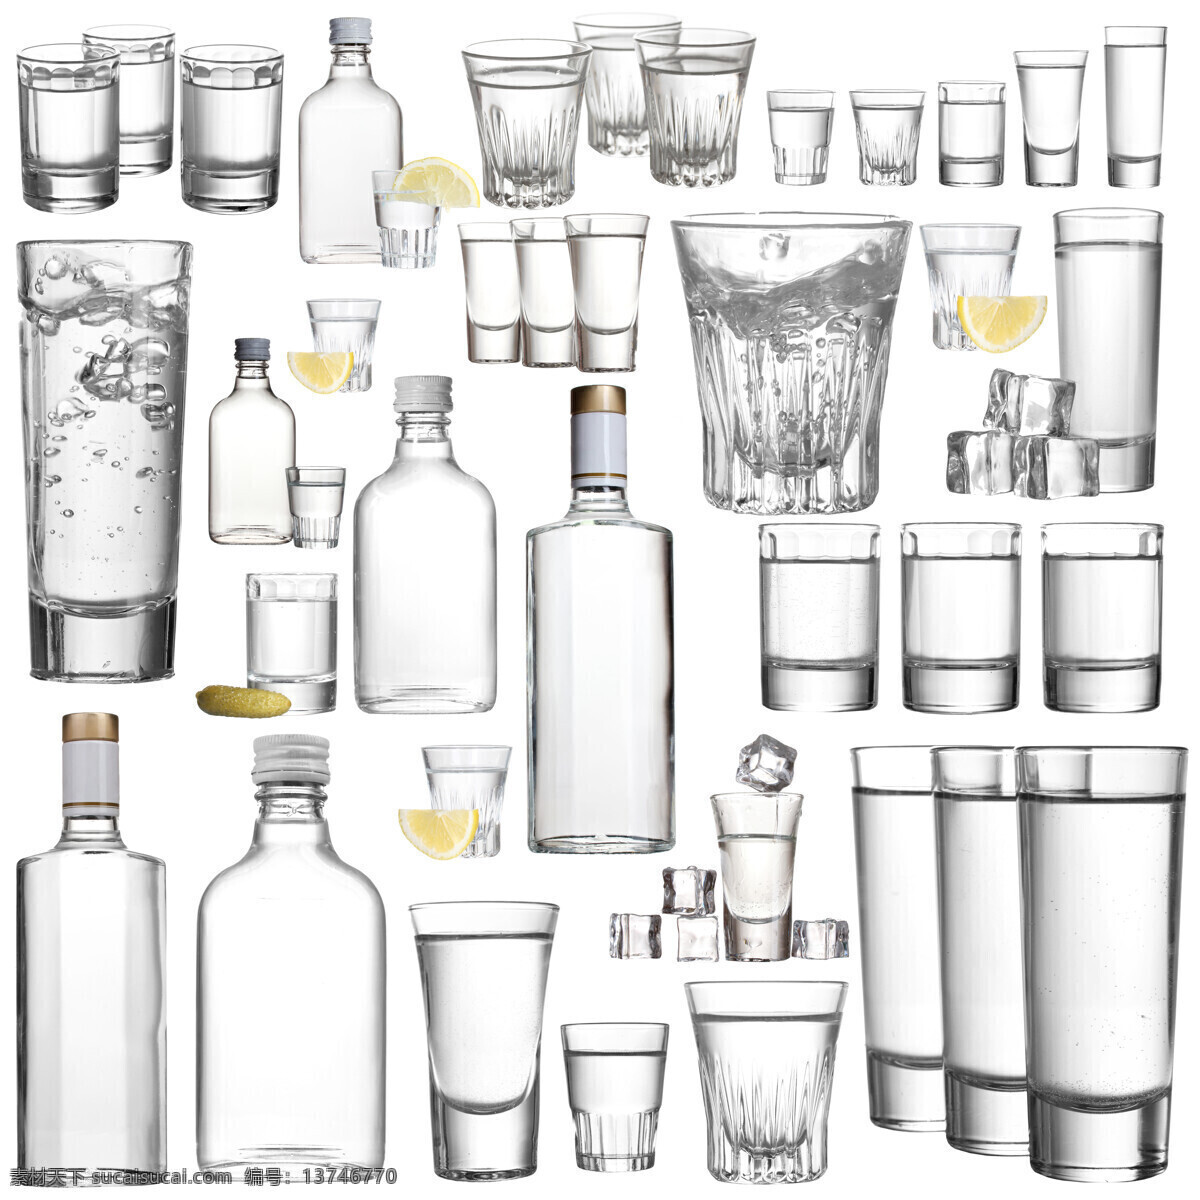 酒水 透明 玻璃 杯子 器皿 酒杯 生活百科 生活用品